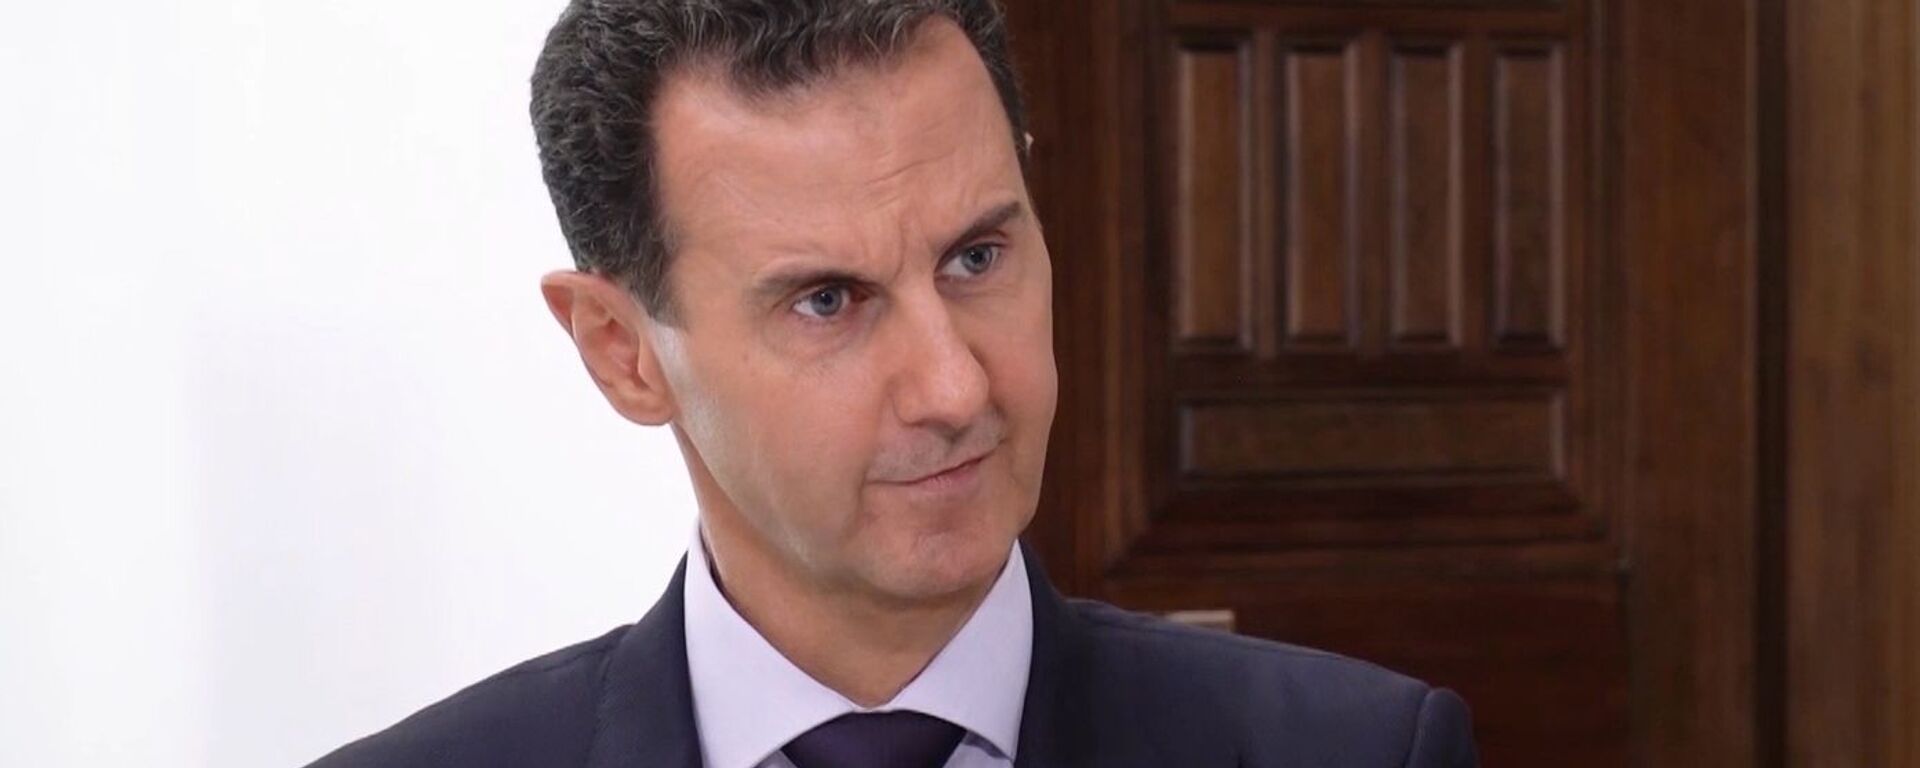 El presidente de Siria, Bashar Asad - Sputnik Mundo, 1920, 17.10.2021